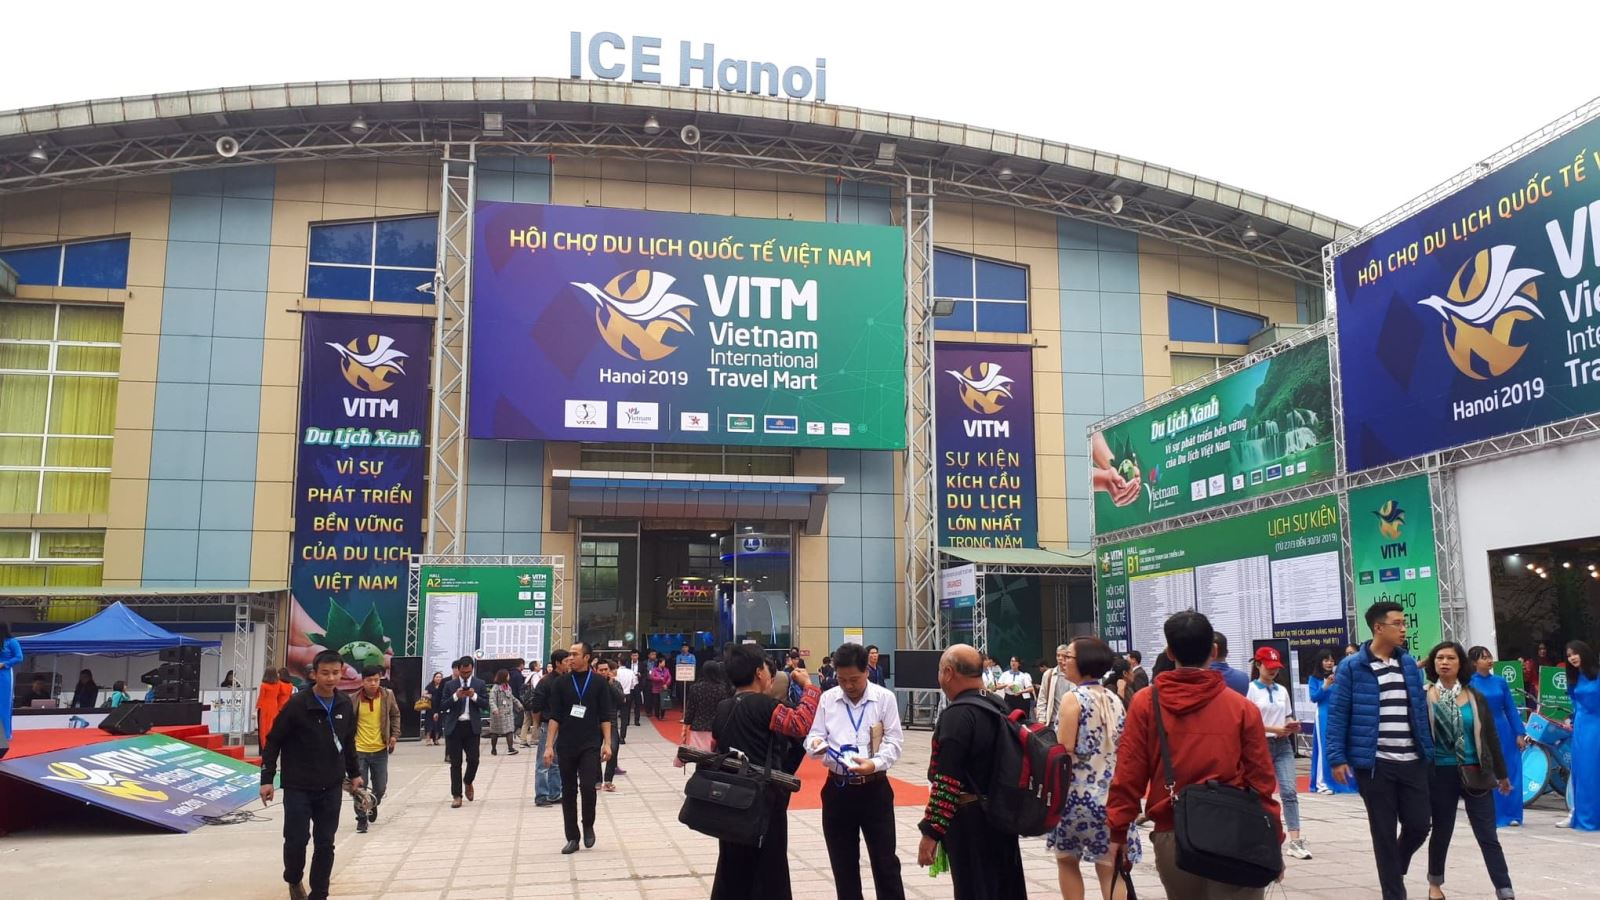 Hội chợ du lịch quốc tế VITM Hà Nội 2021 sẽ được tổ chức từ ngày 29/7 đến 1/8 - Ảnh 1.